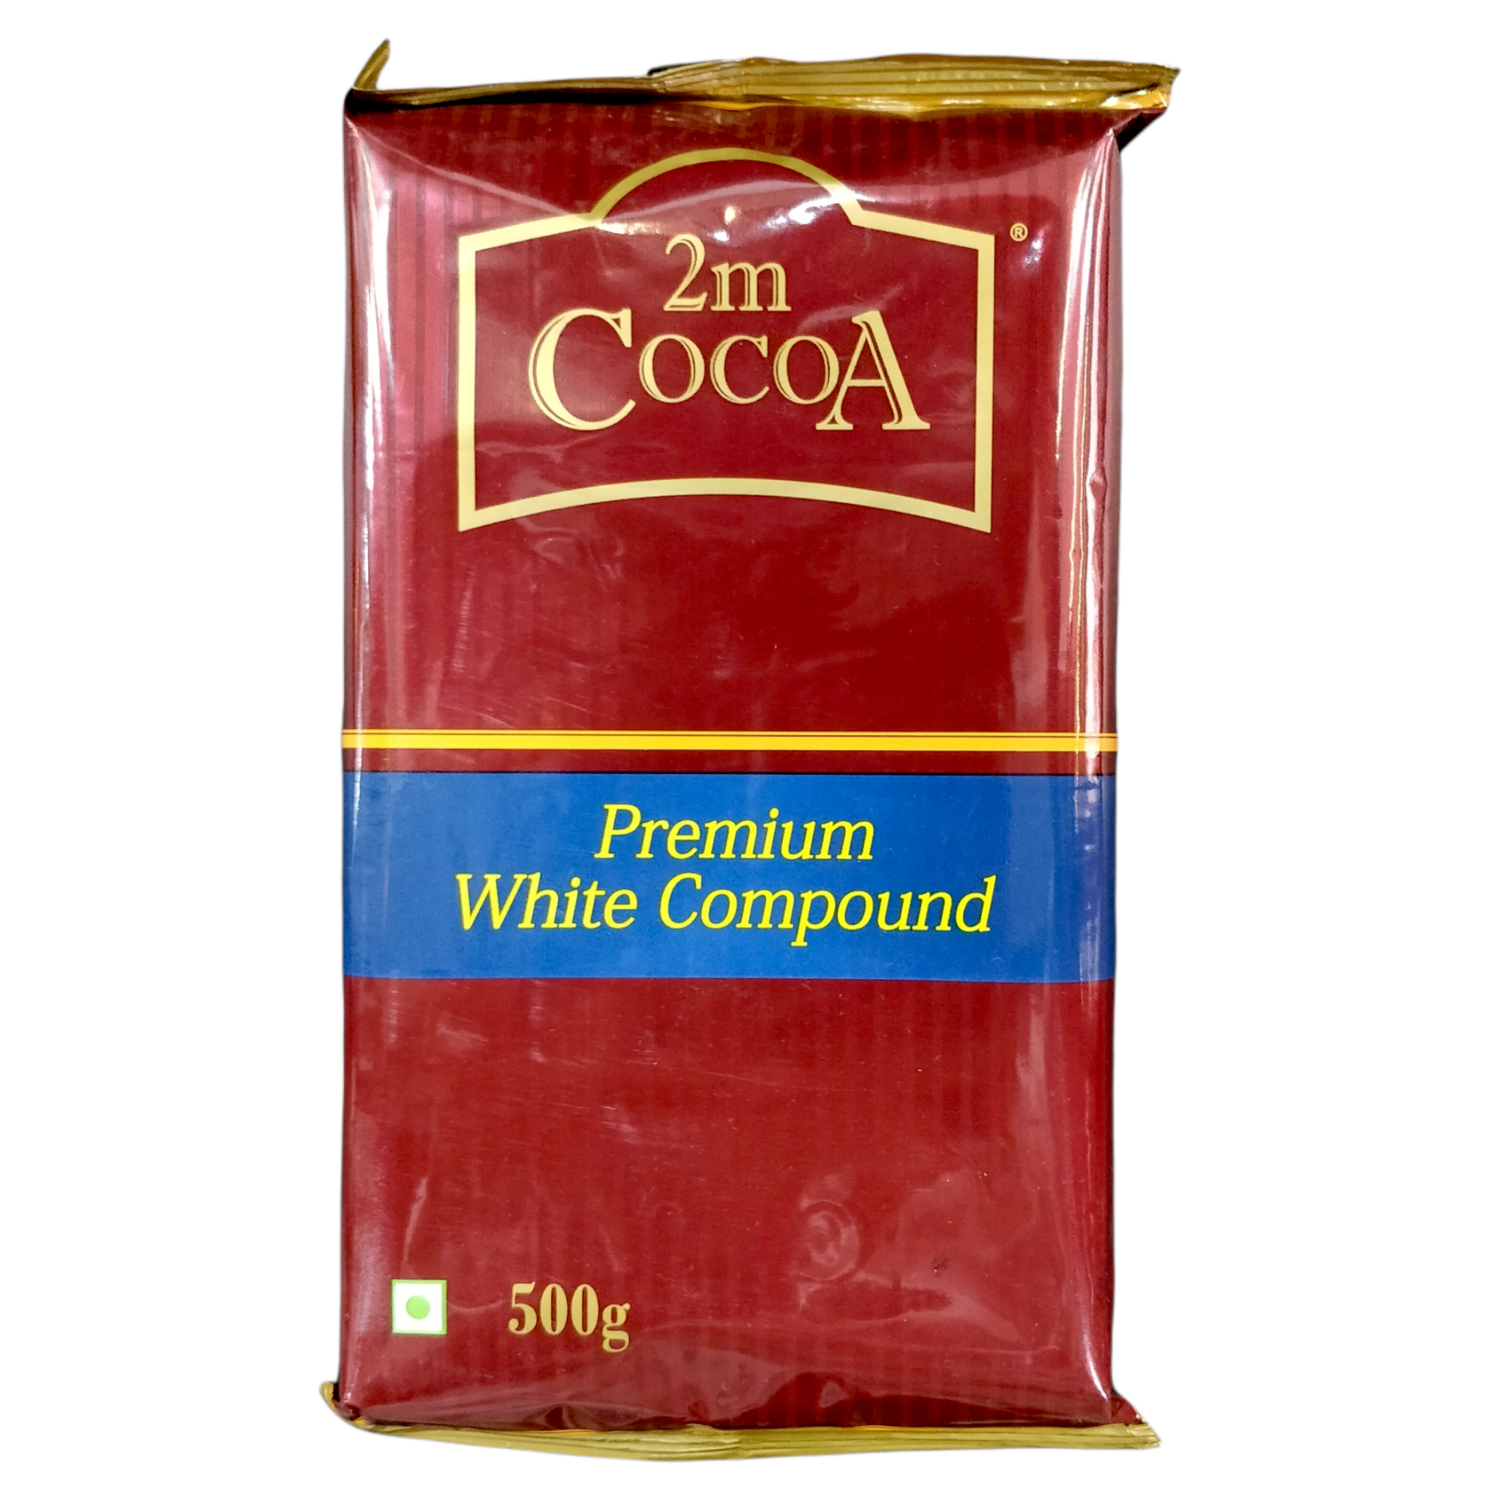 2M Cocoa Premium White Compound 500gms